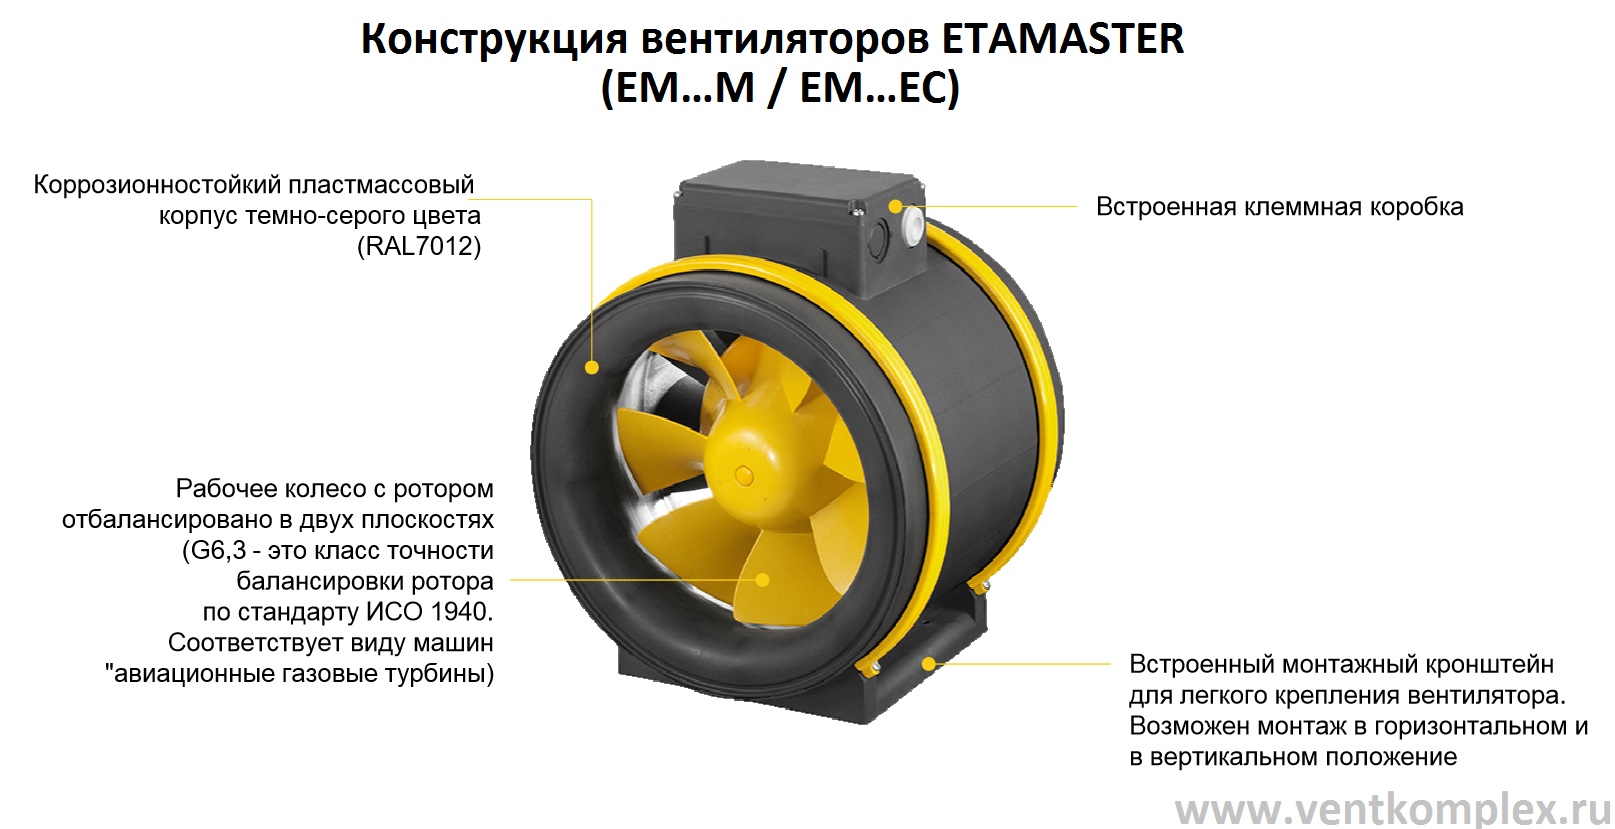 Конструкция вентиляторов ETAMASTER  